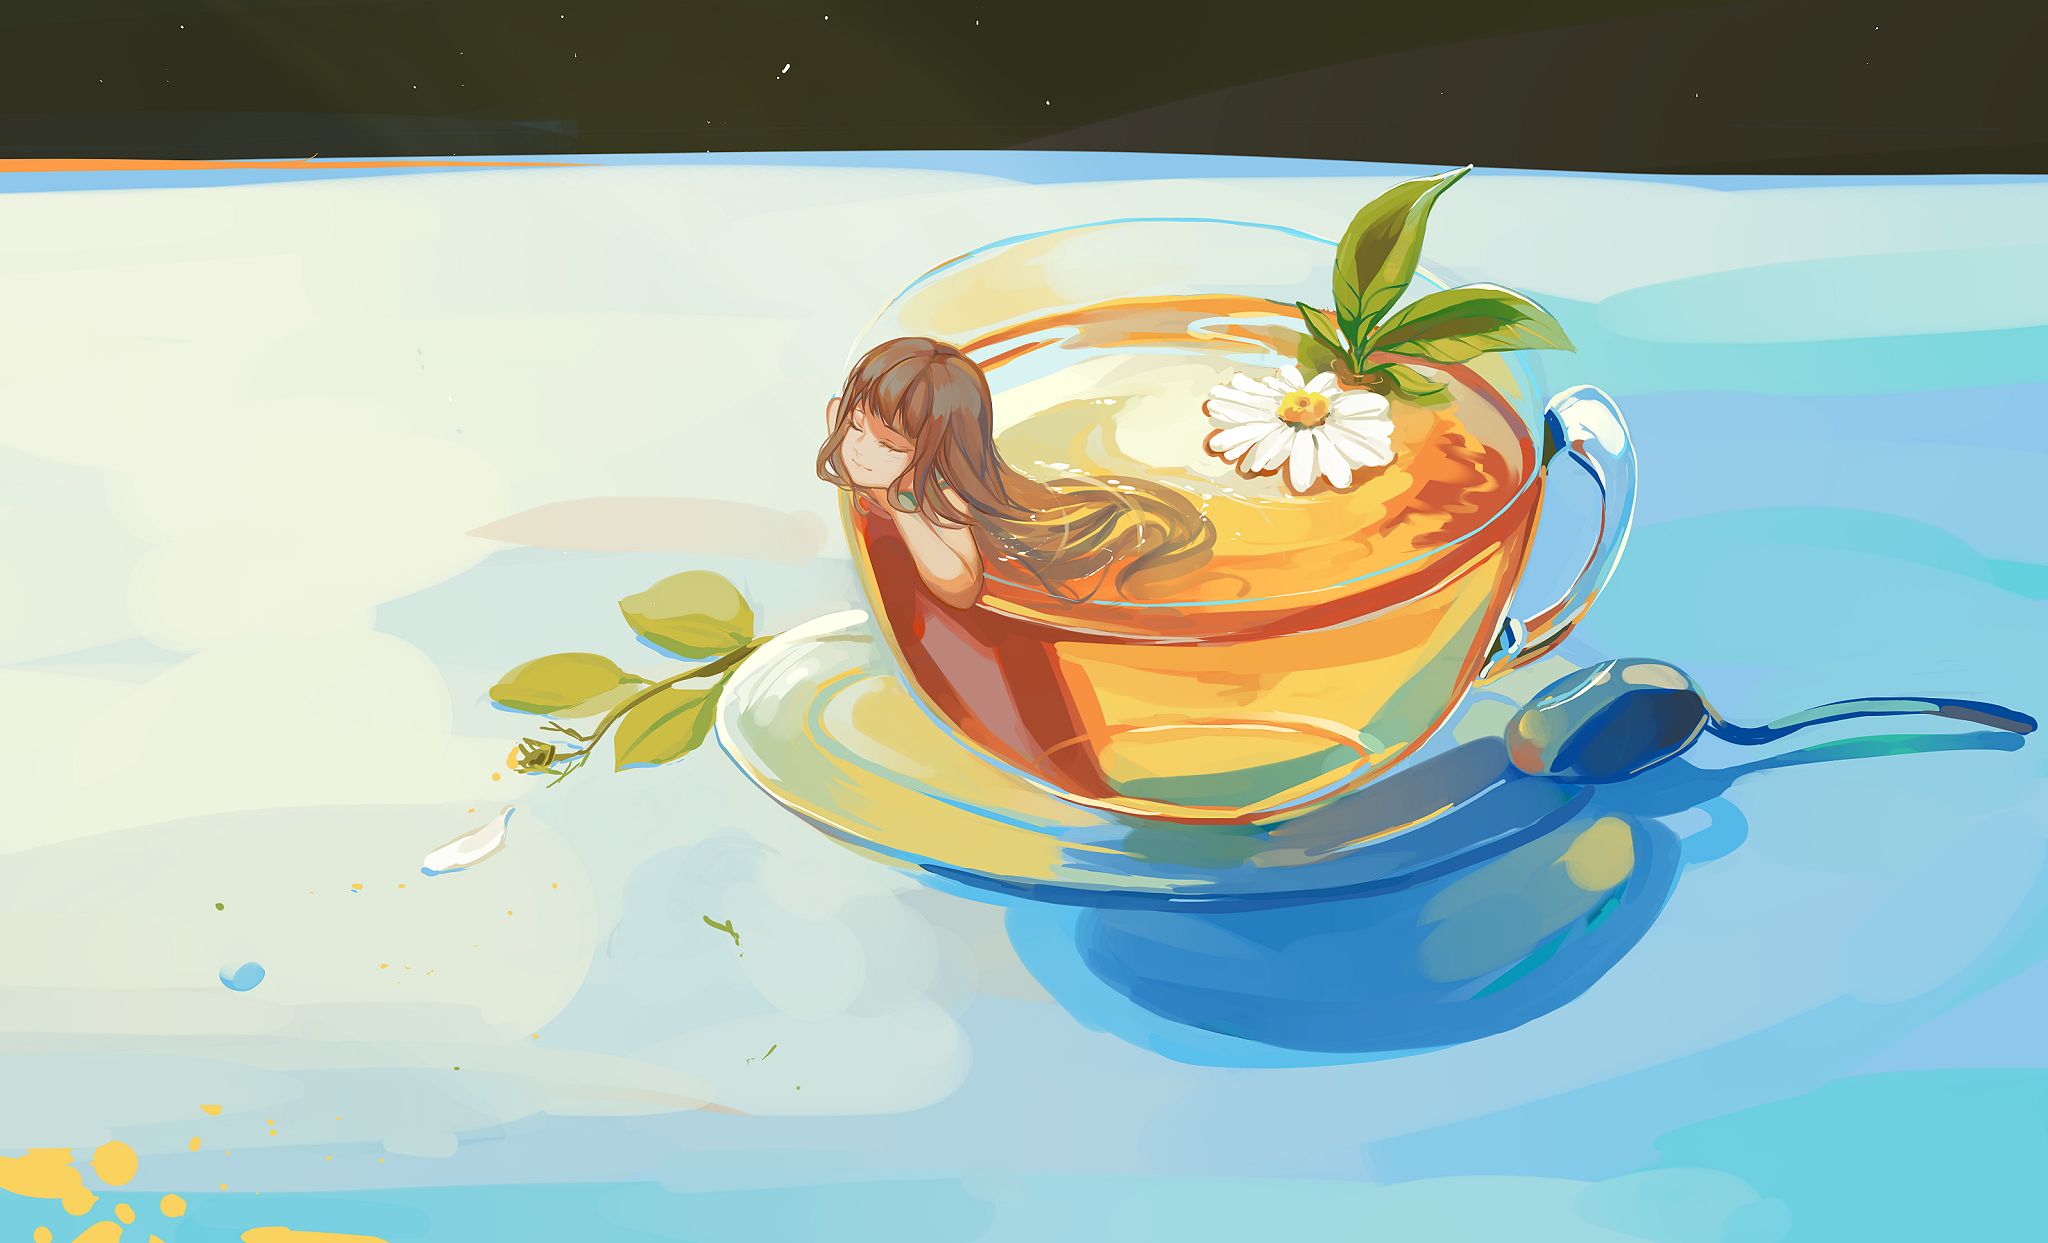 anime, original, spoon, tea cup, tea Image for desktop